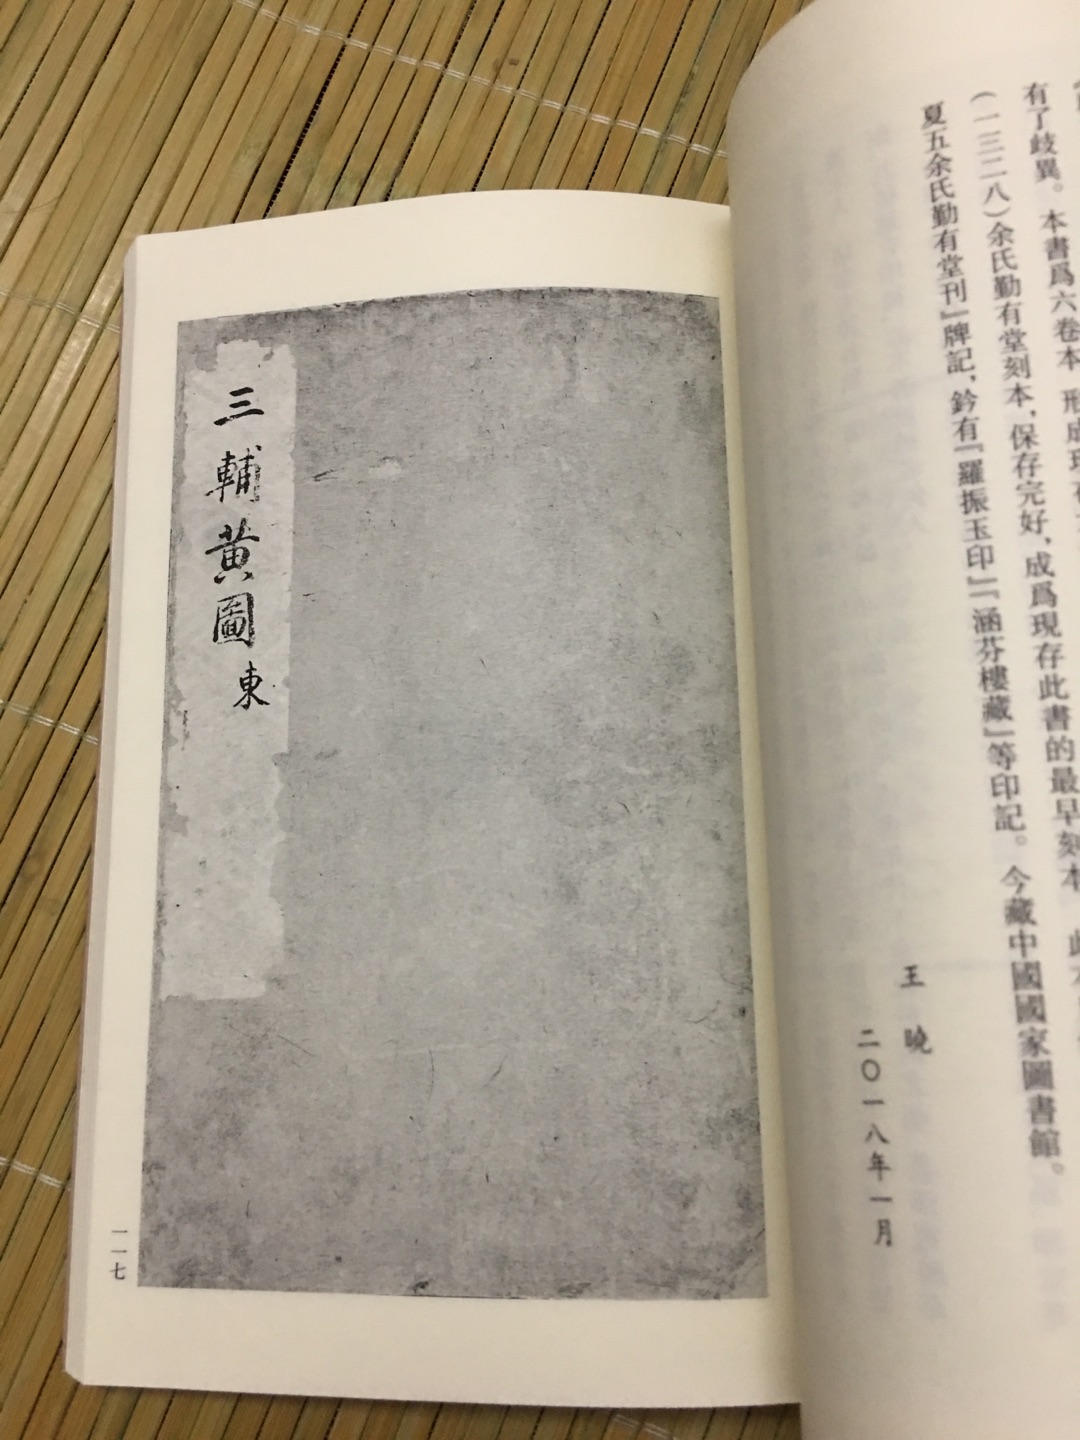 《东京梦华录》是宋代孟元老的笔记体散记文，是一本追述北宋都城东京（今河南开封）城市风俗人情的著作。所记大多是宋徽宗崇宁到宣和（1102—1125）年间北宋都城东京的情况，描绘了这一历史时期居住在东京的上至王公贵族、下及庶民百姓的日常生活情景，是研究北宋都市社会生活、经济文化的一部极其重要的历史文献古籍。此次影印本为国家图书馆藏元刻本。       《三辅黄图》为古代地理书籍，作者佚名。记载秦汉时期三辅（即京兆尹、左冯翊、右扶风）的城池、宫观、陵庙、明堂、辟雍、郊畤等，间涉及周代旧迹。各项建筑，皆指出所在方位。此书条理清晰，为研究关中历史地理尤其是汉都长安zui重要的历史文献。原书一卷，后有二卷、三卷、六卷版本。现今六卷本的格局，学者推测始自元刊本。此次影印本为六卷本，国家图书馆藏元致和元年余氏勤有堂刻本。